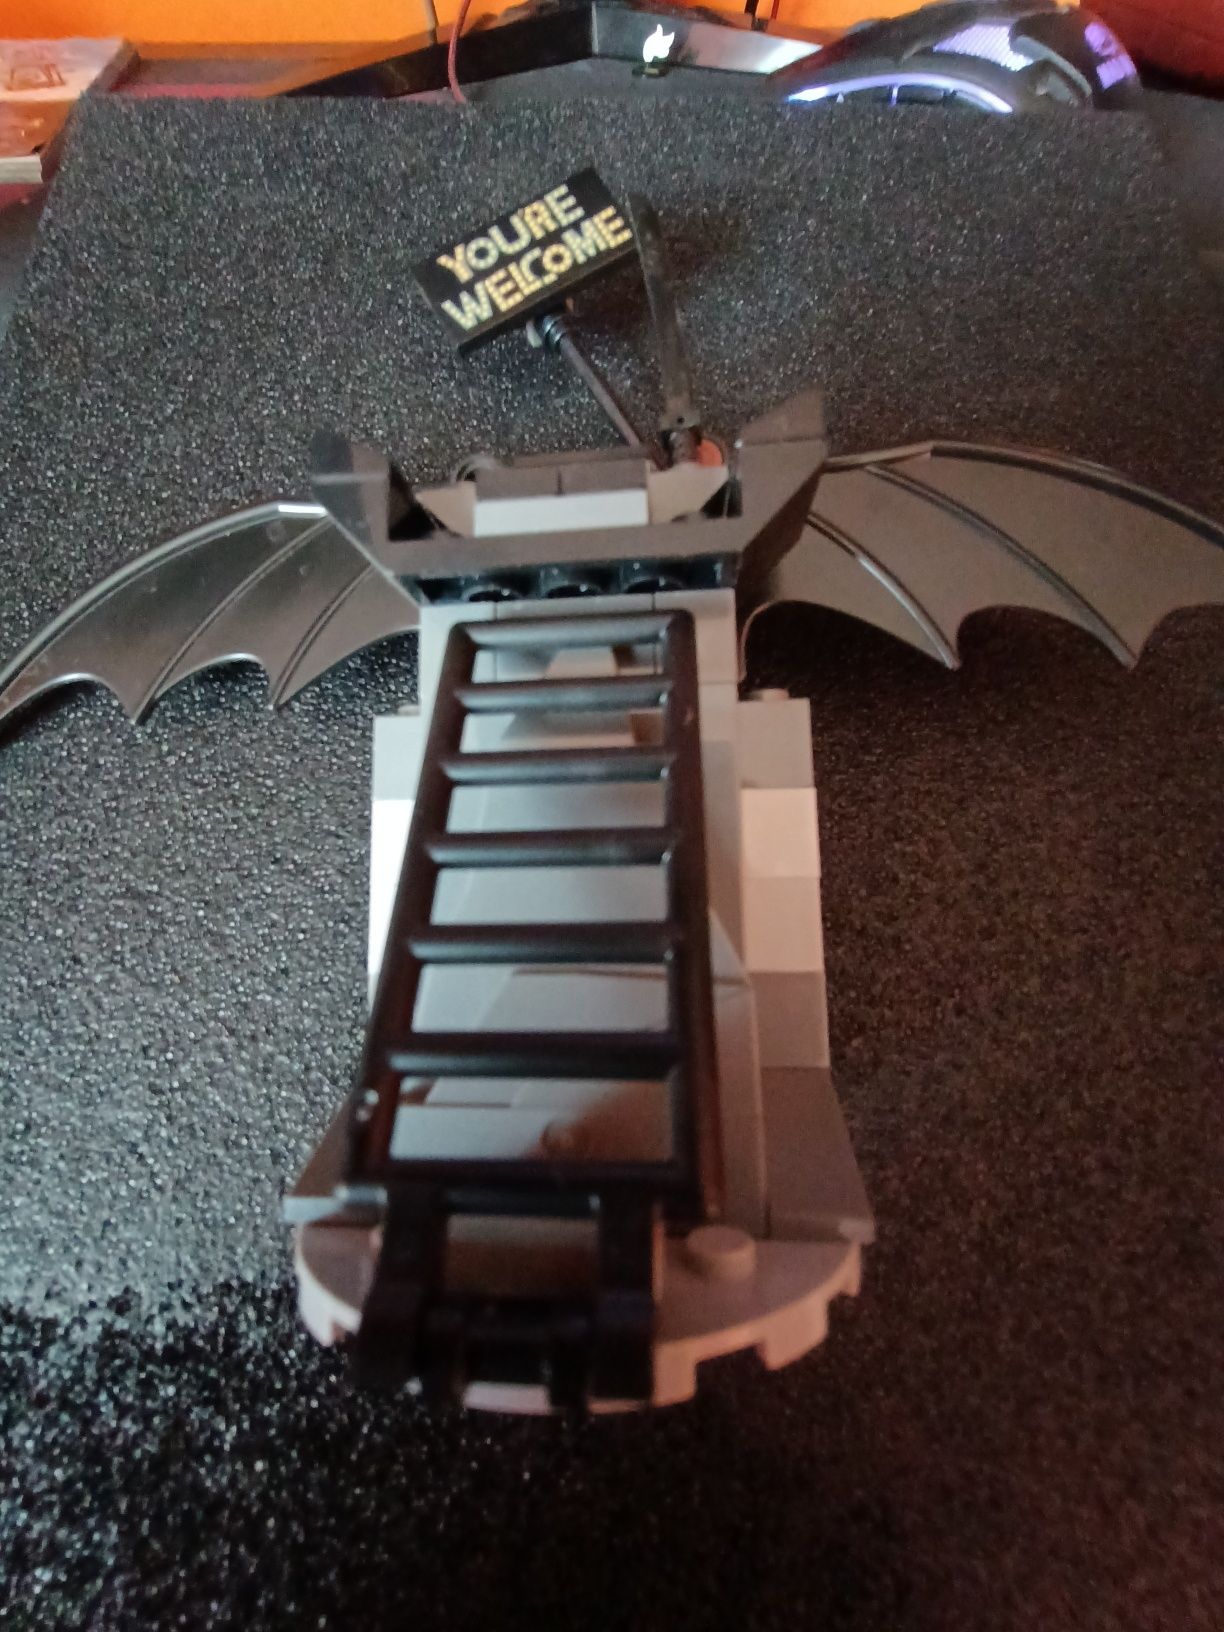 Minifigurka Batmana. LEGO przygoda.